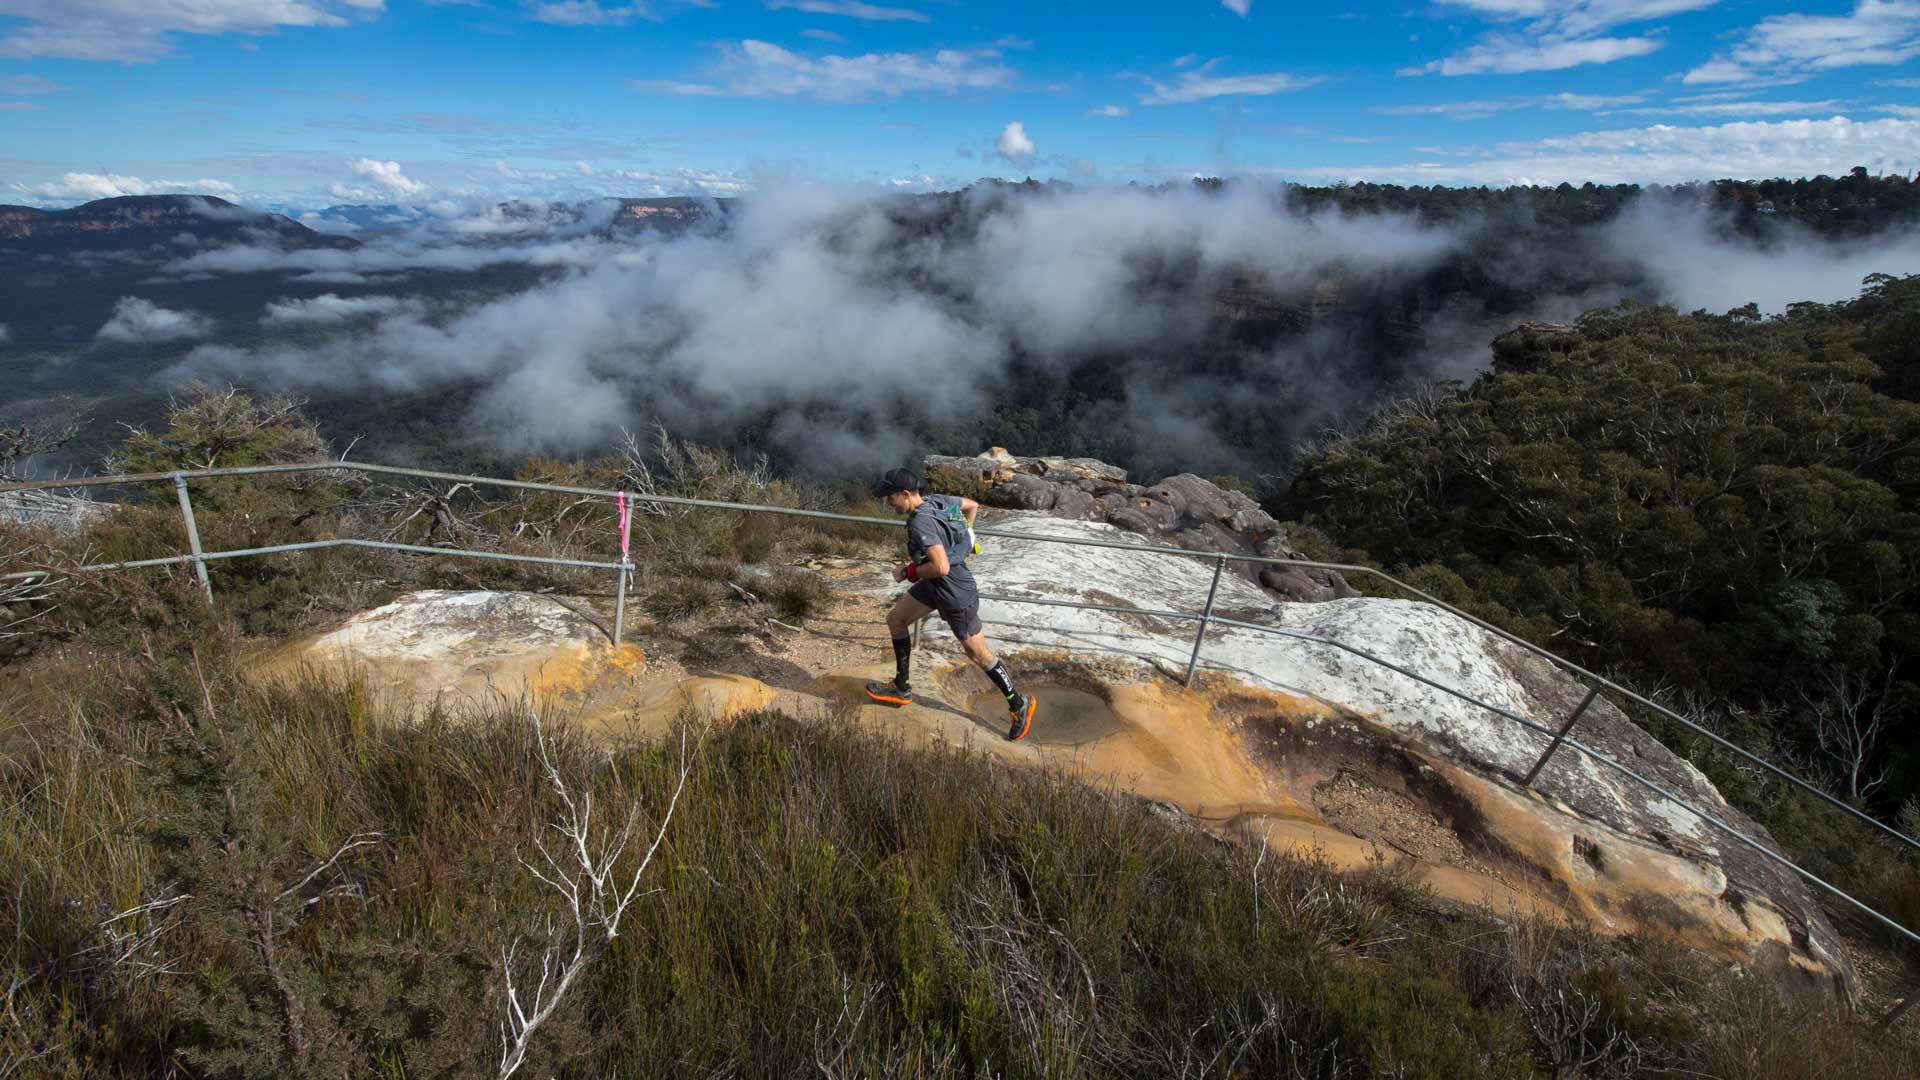 Ultra-Trail Australia